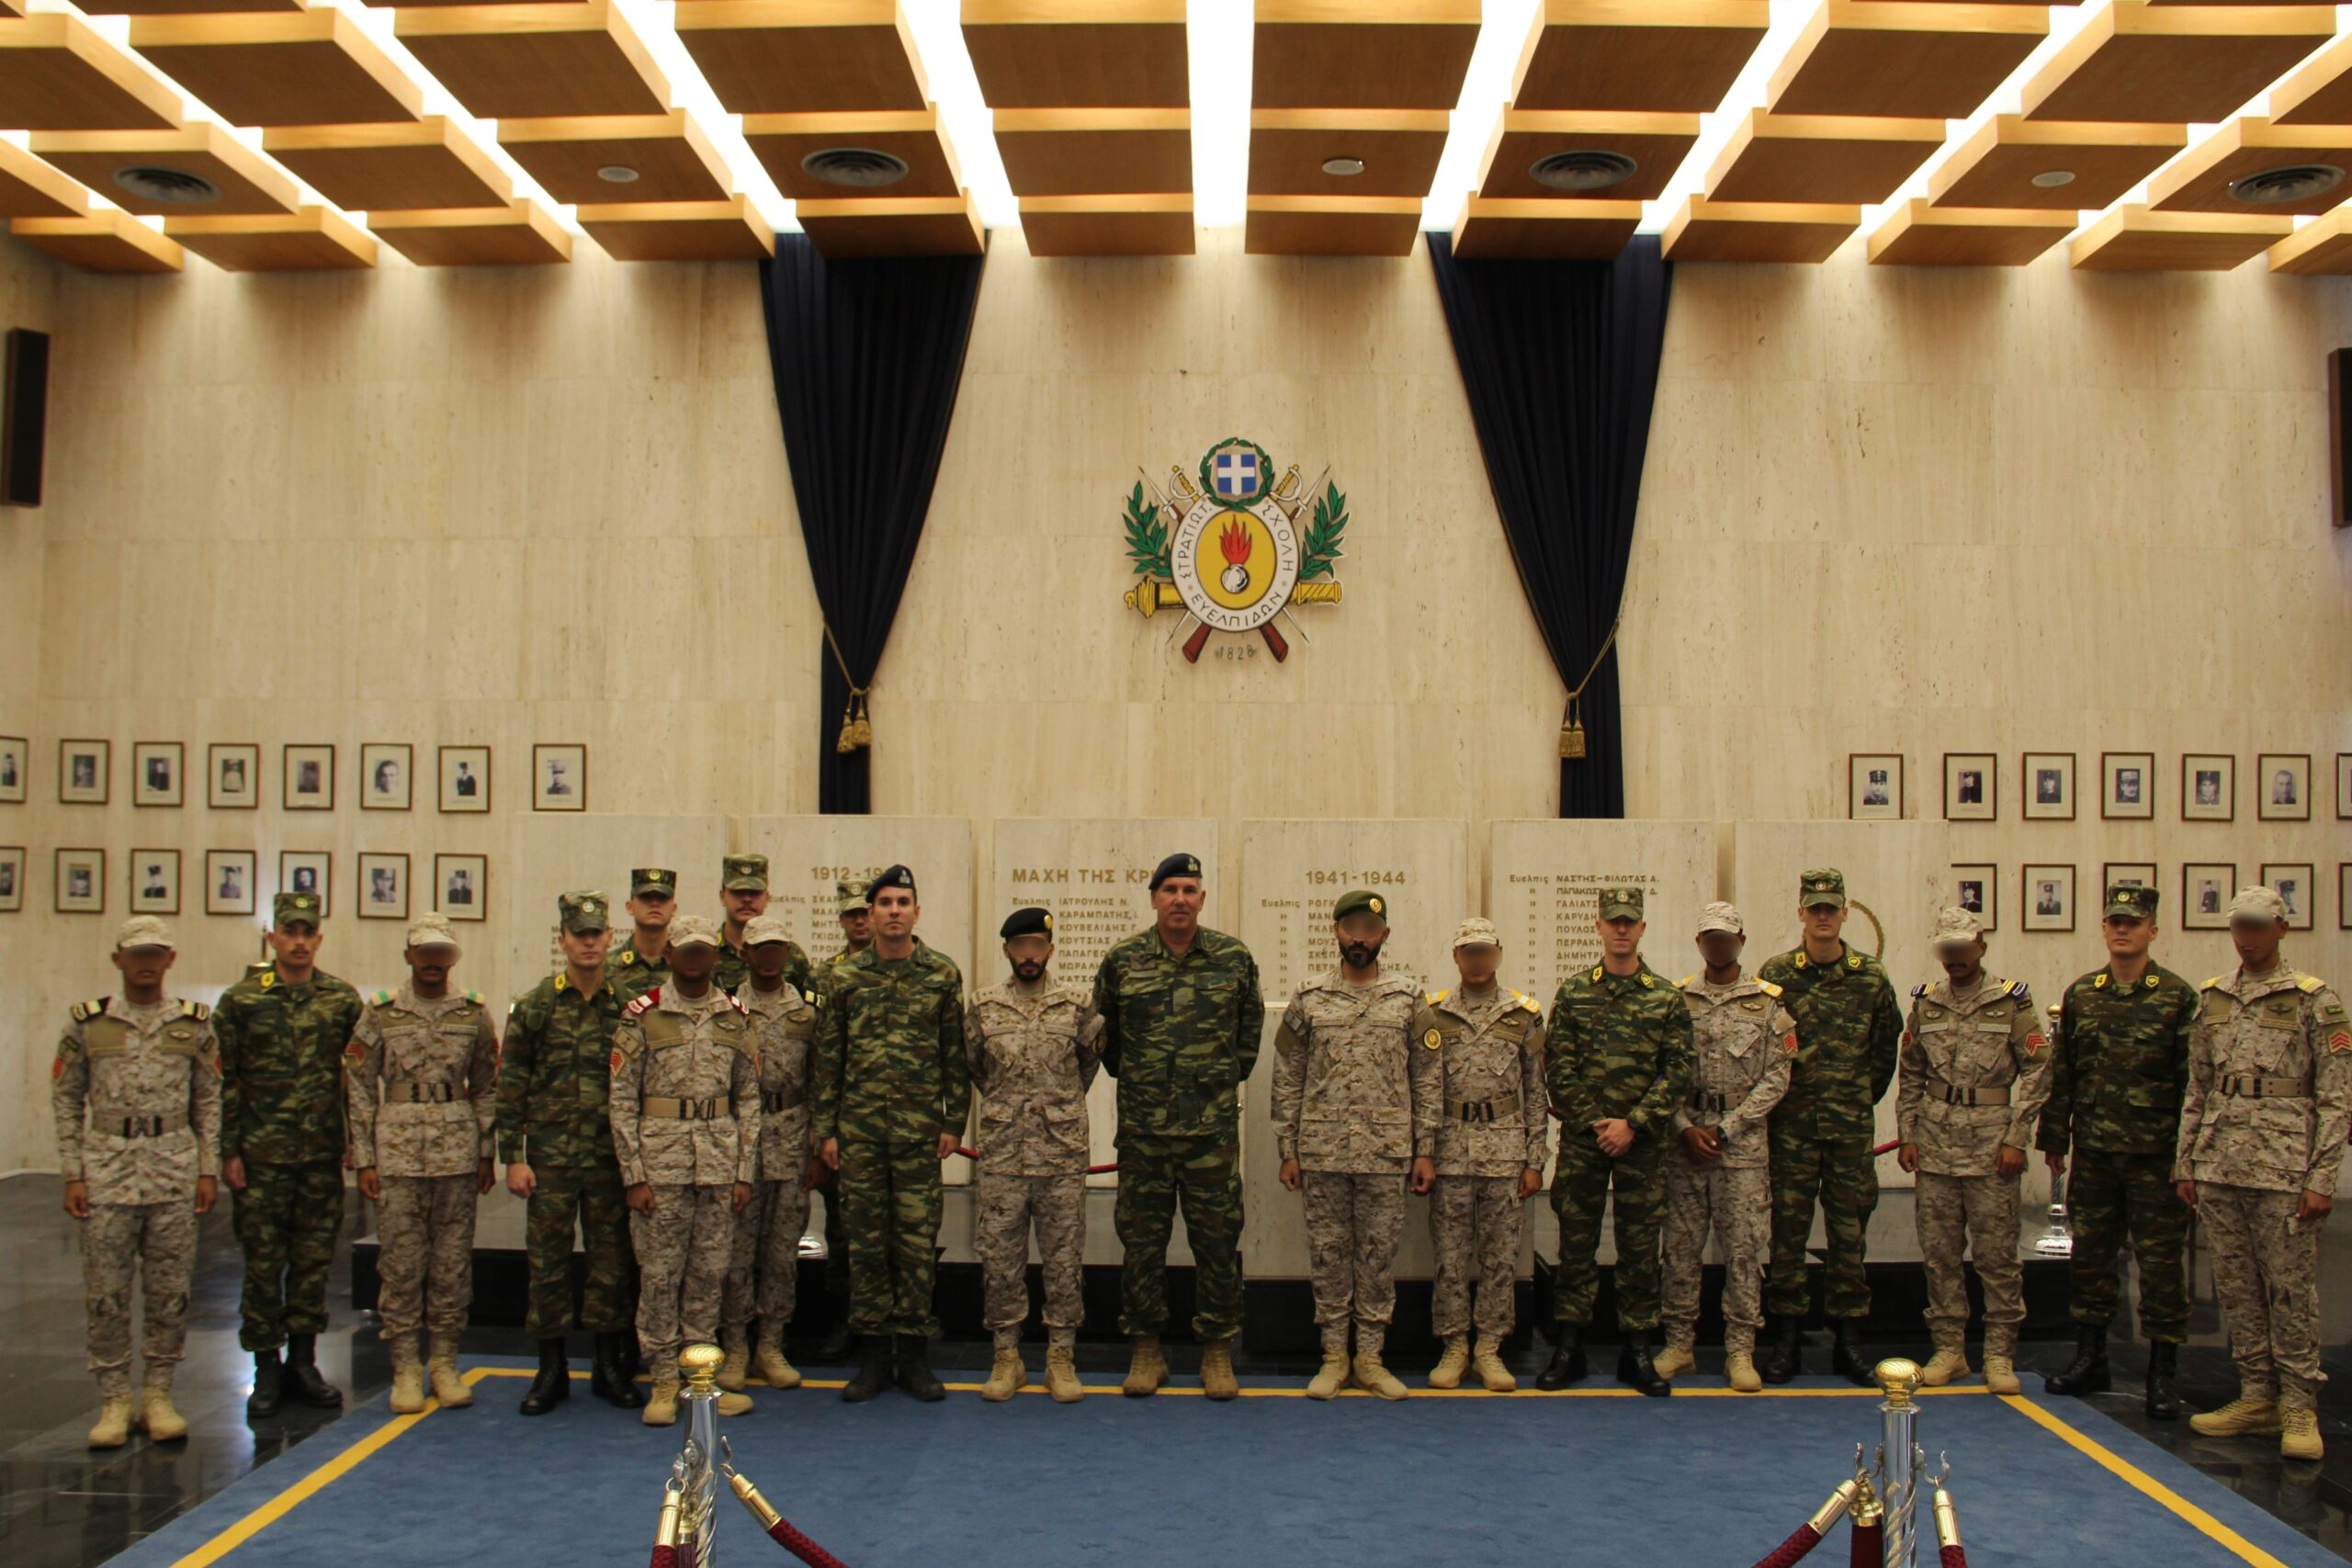 Επίσκεψη Αντιπροσωπείας του Βασιλείου της Σαουδικής Αραβίας στη Στρατιωτική Σχολή Ευελπίδων